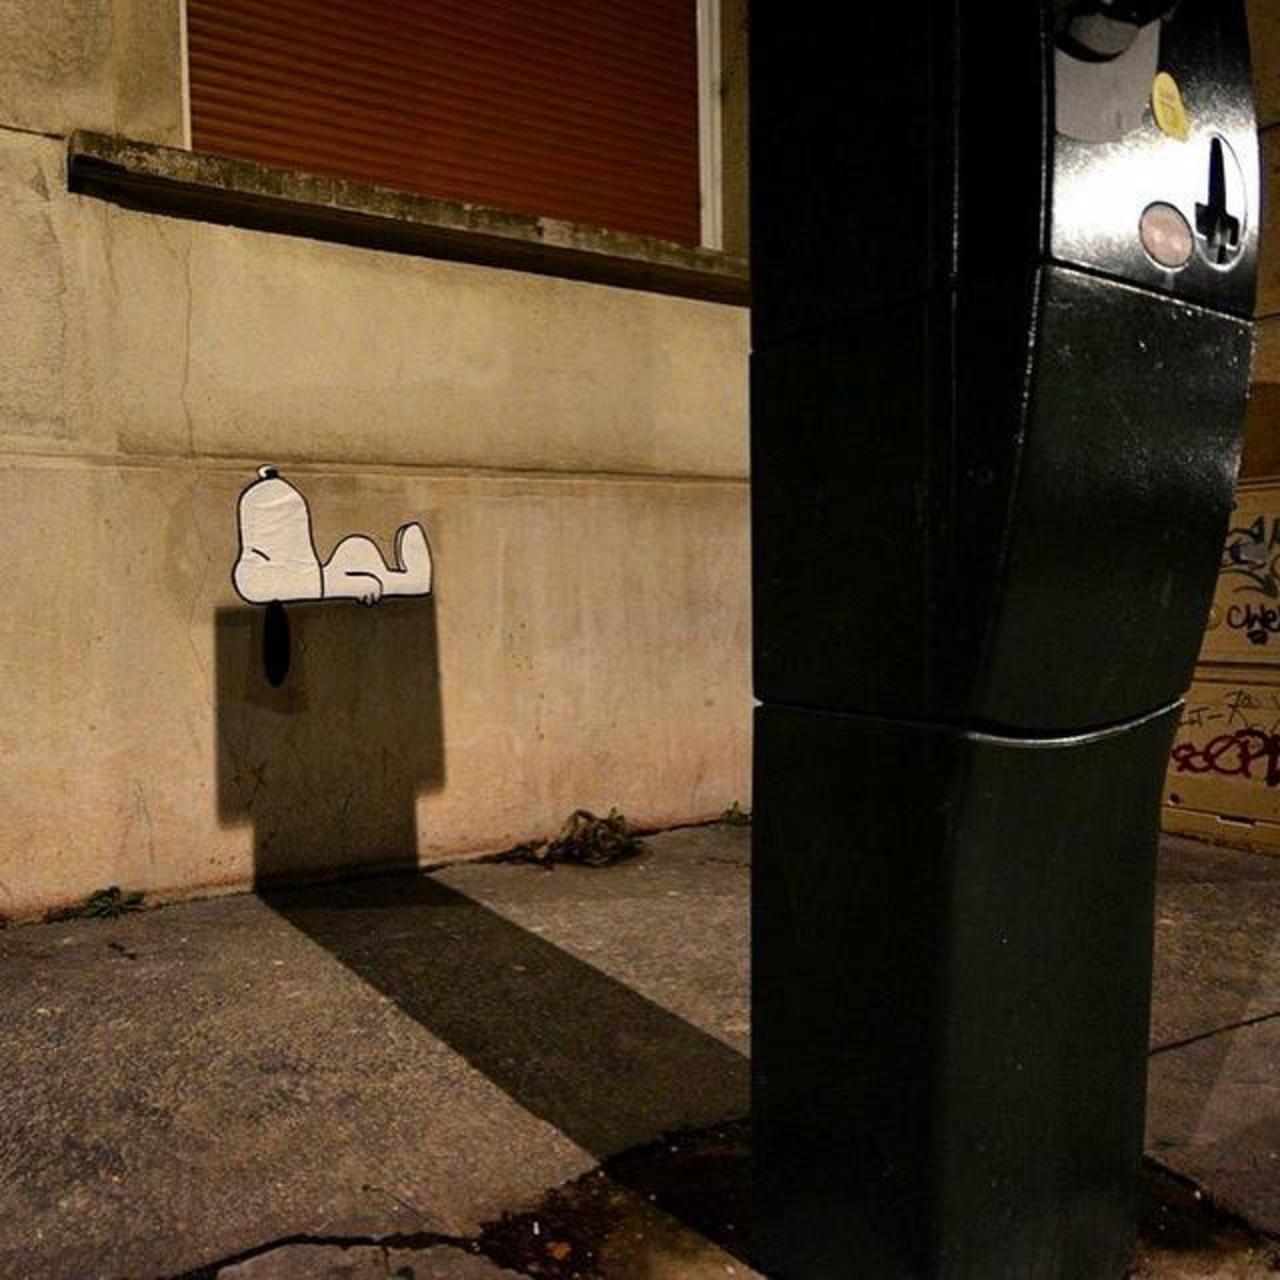 "Snoopy" by OakOak, in Saint-Etienne, France

#streetart #urbanart #mural #art #graffiti http://t.co/eTHSnhQKm4